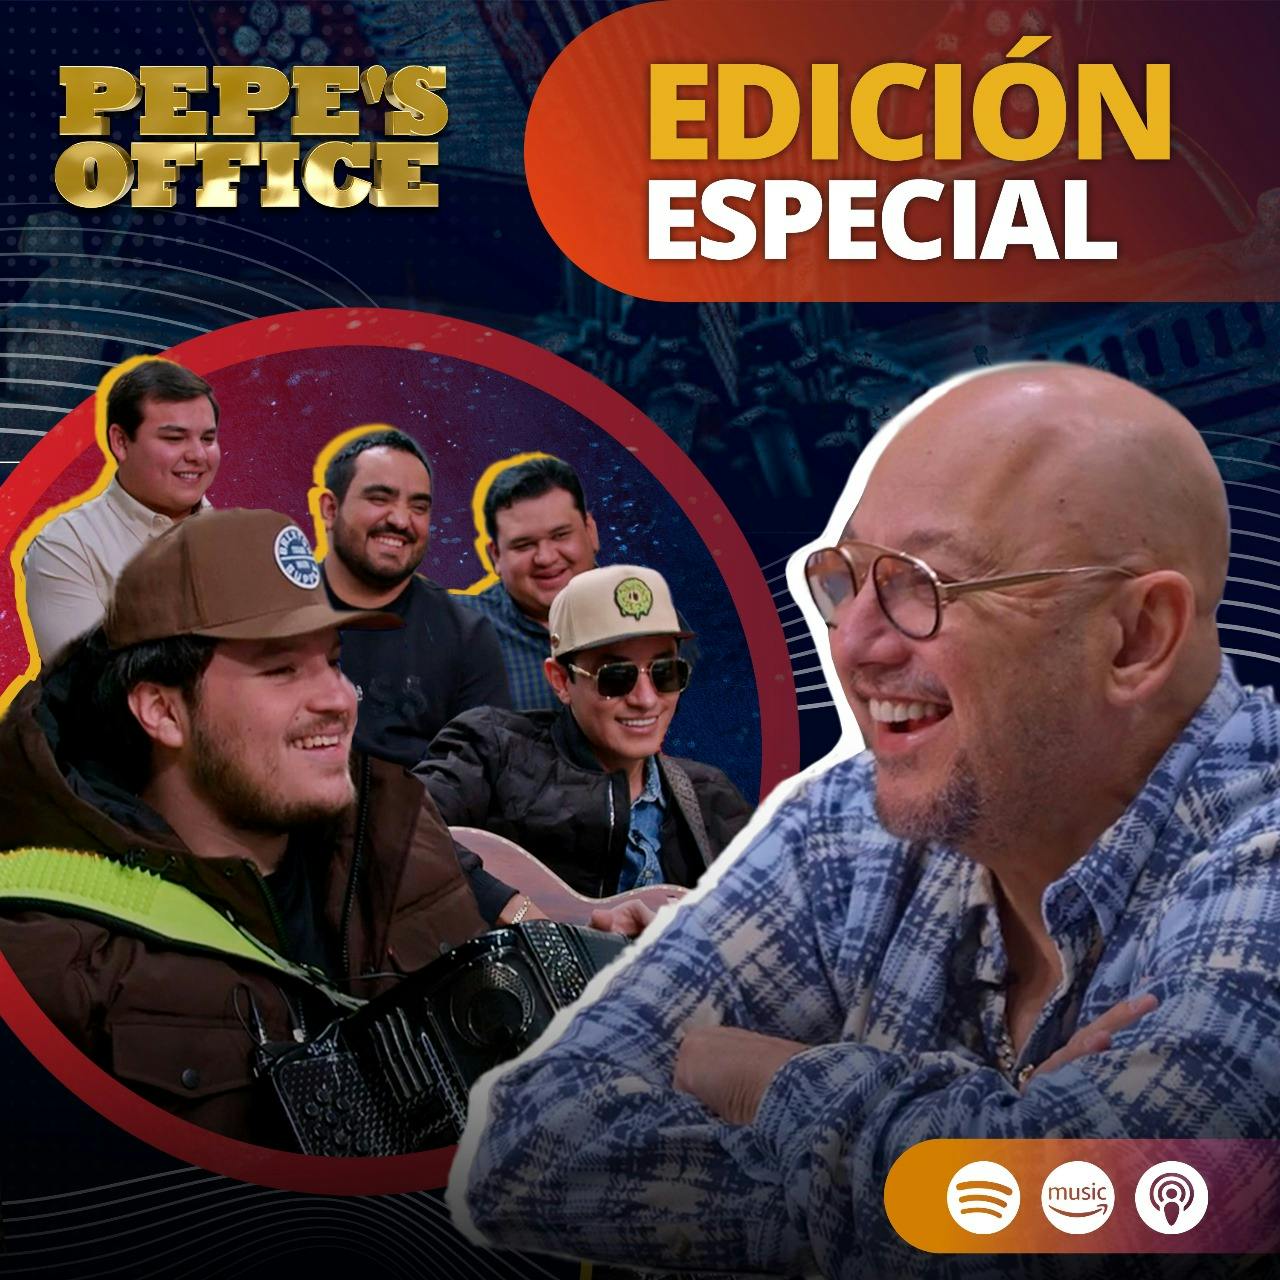 EDICIÓN ESPECIAL: Siguen FIELES a SUS RAÍCES | Pepe's Office